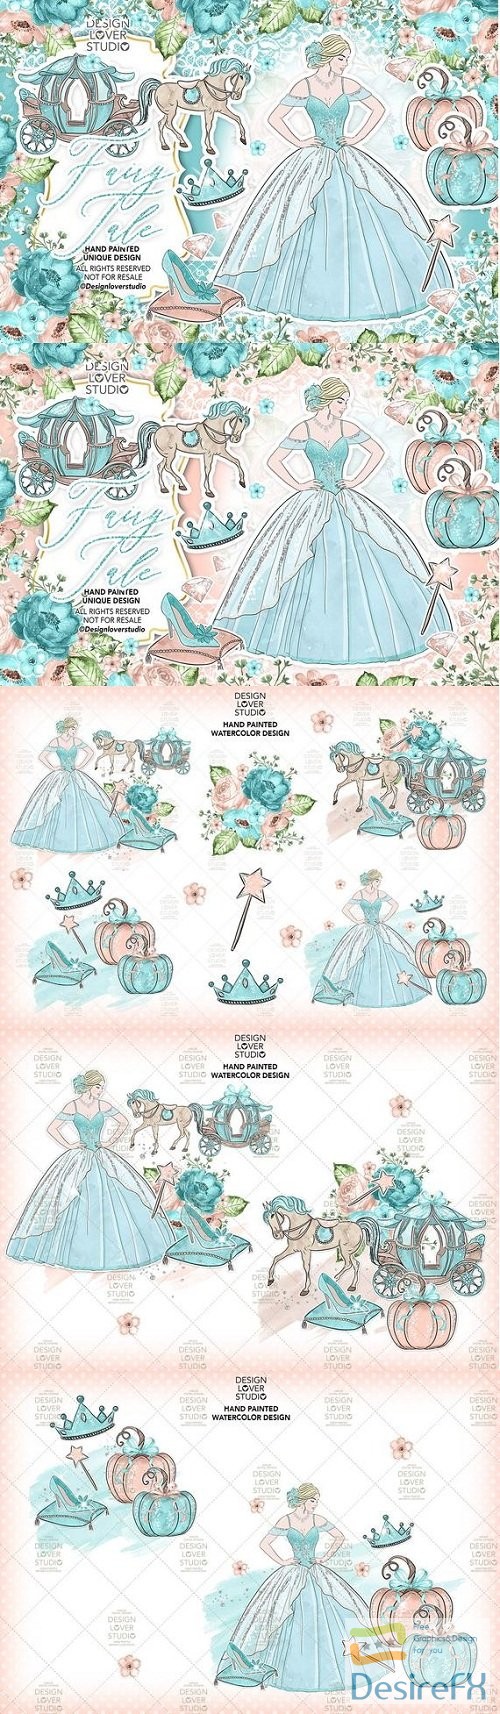 Fairy Tale design